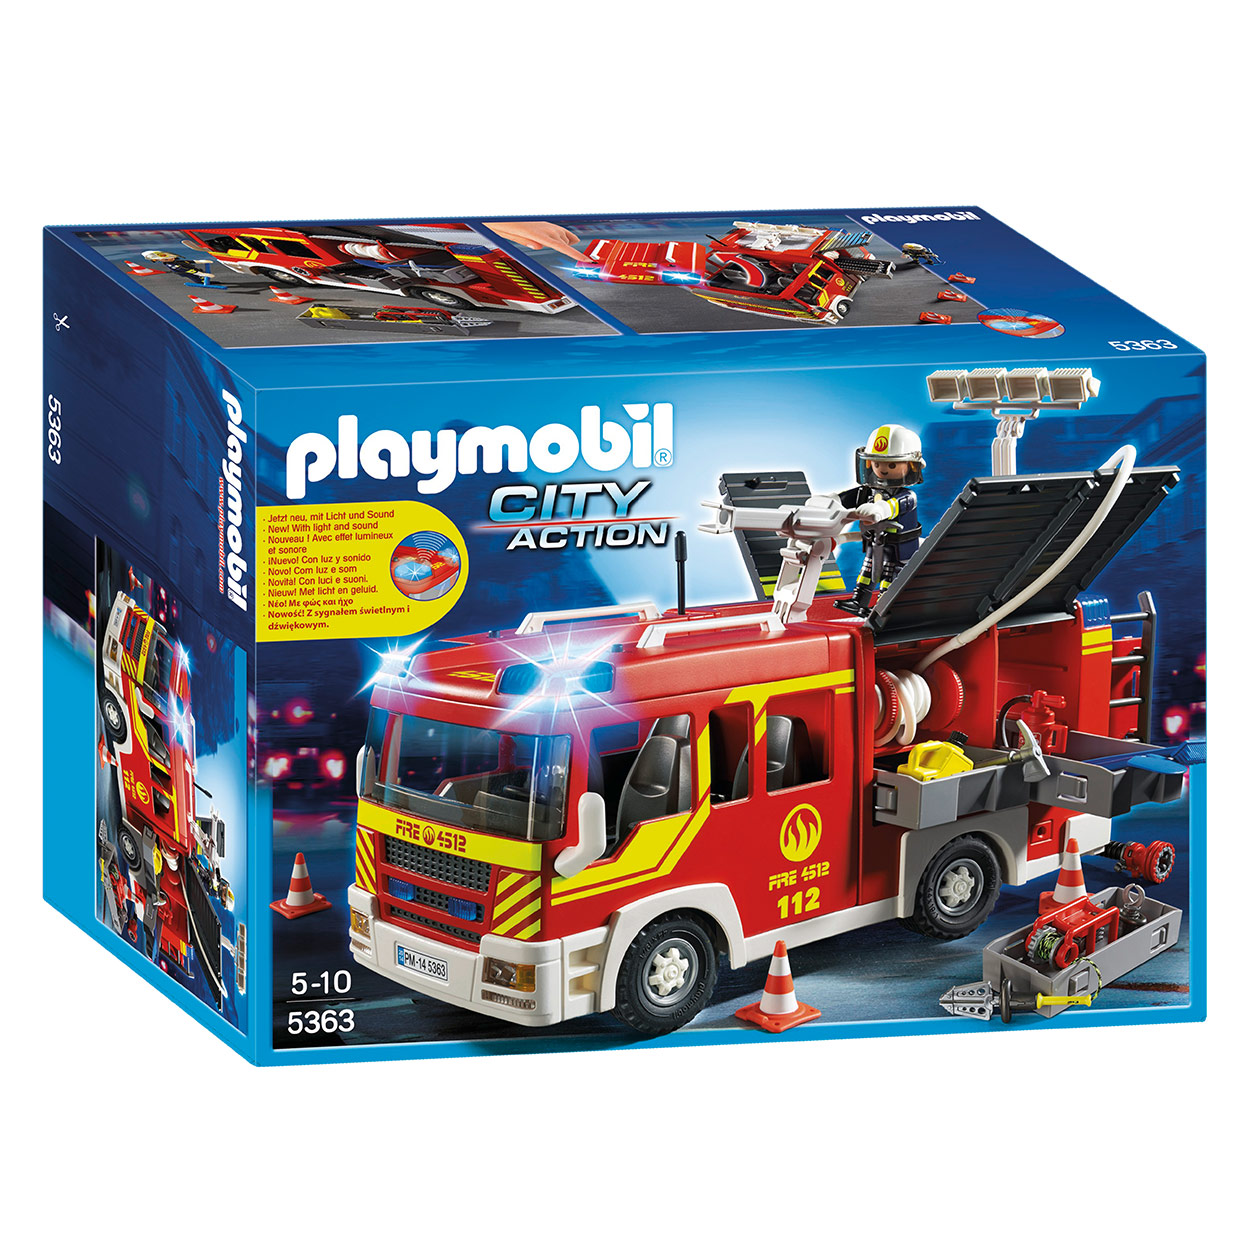 Playmobil 5363 Brandweer Pompwagen